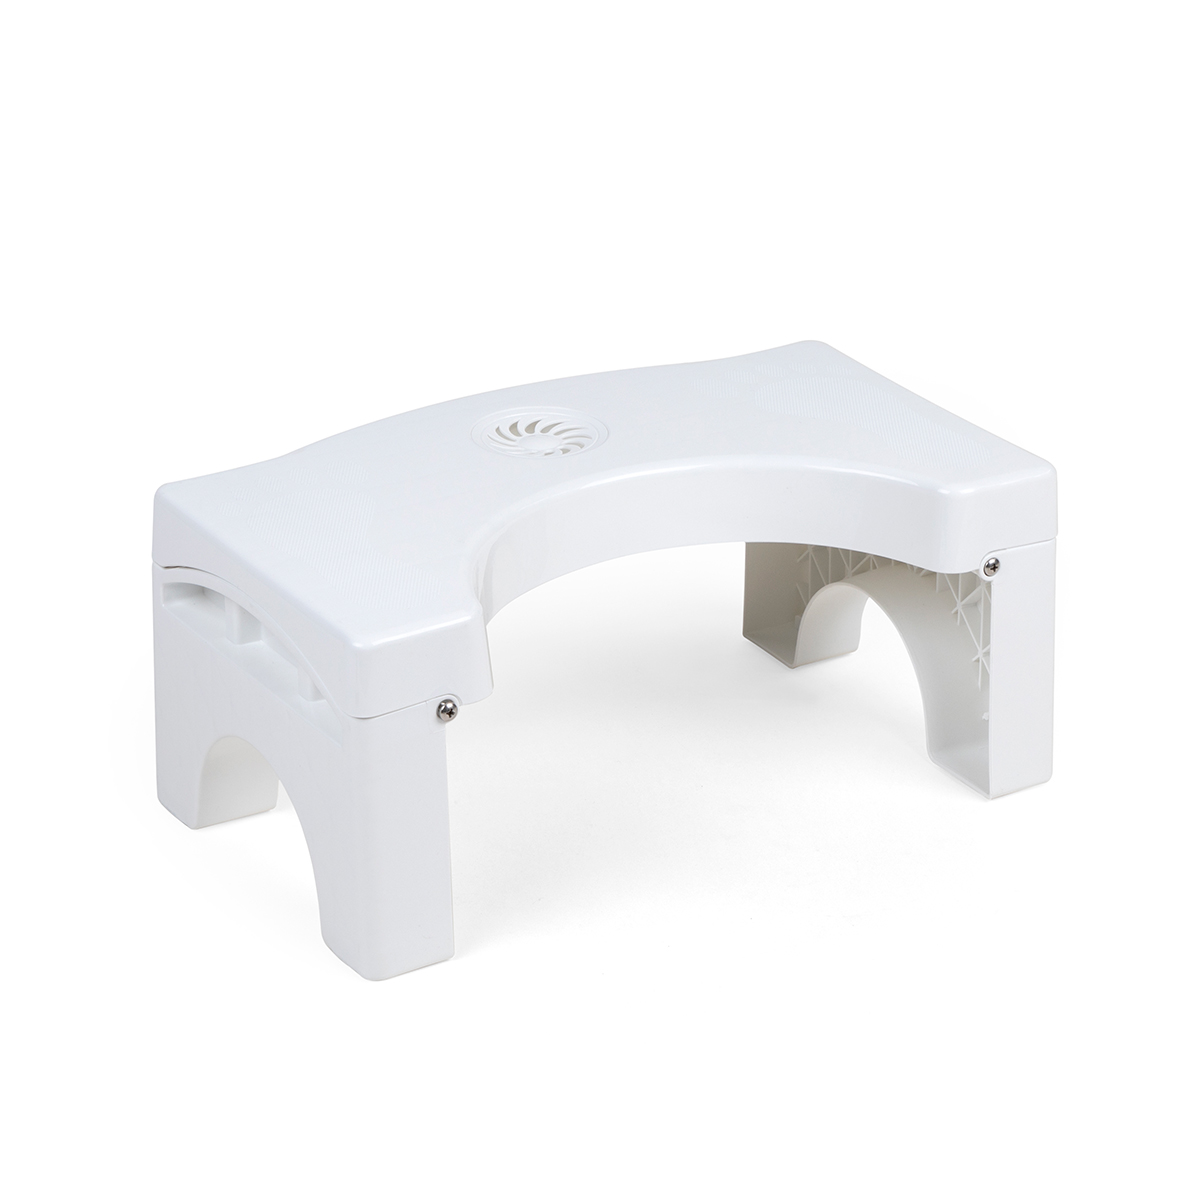 白色折叠垫脚凳-1